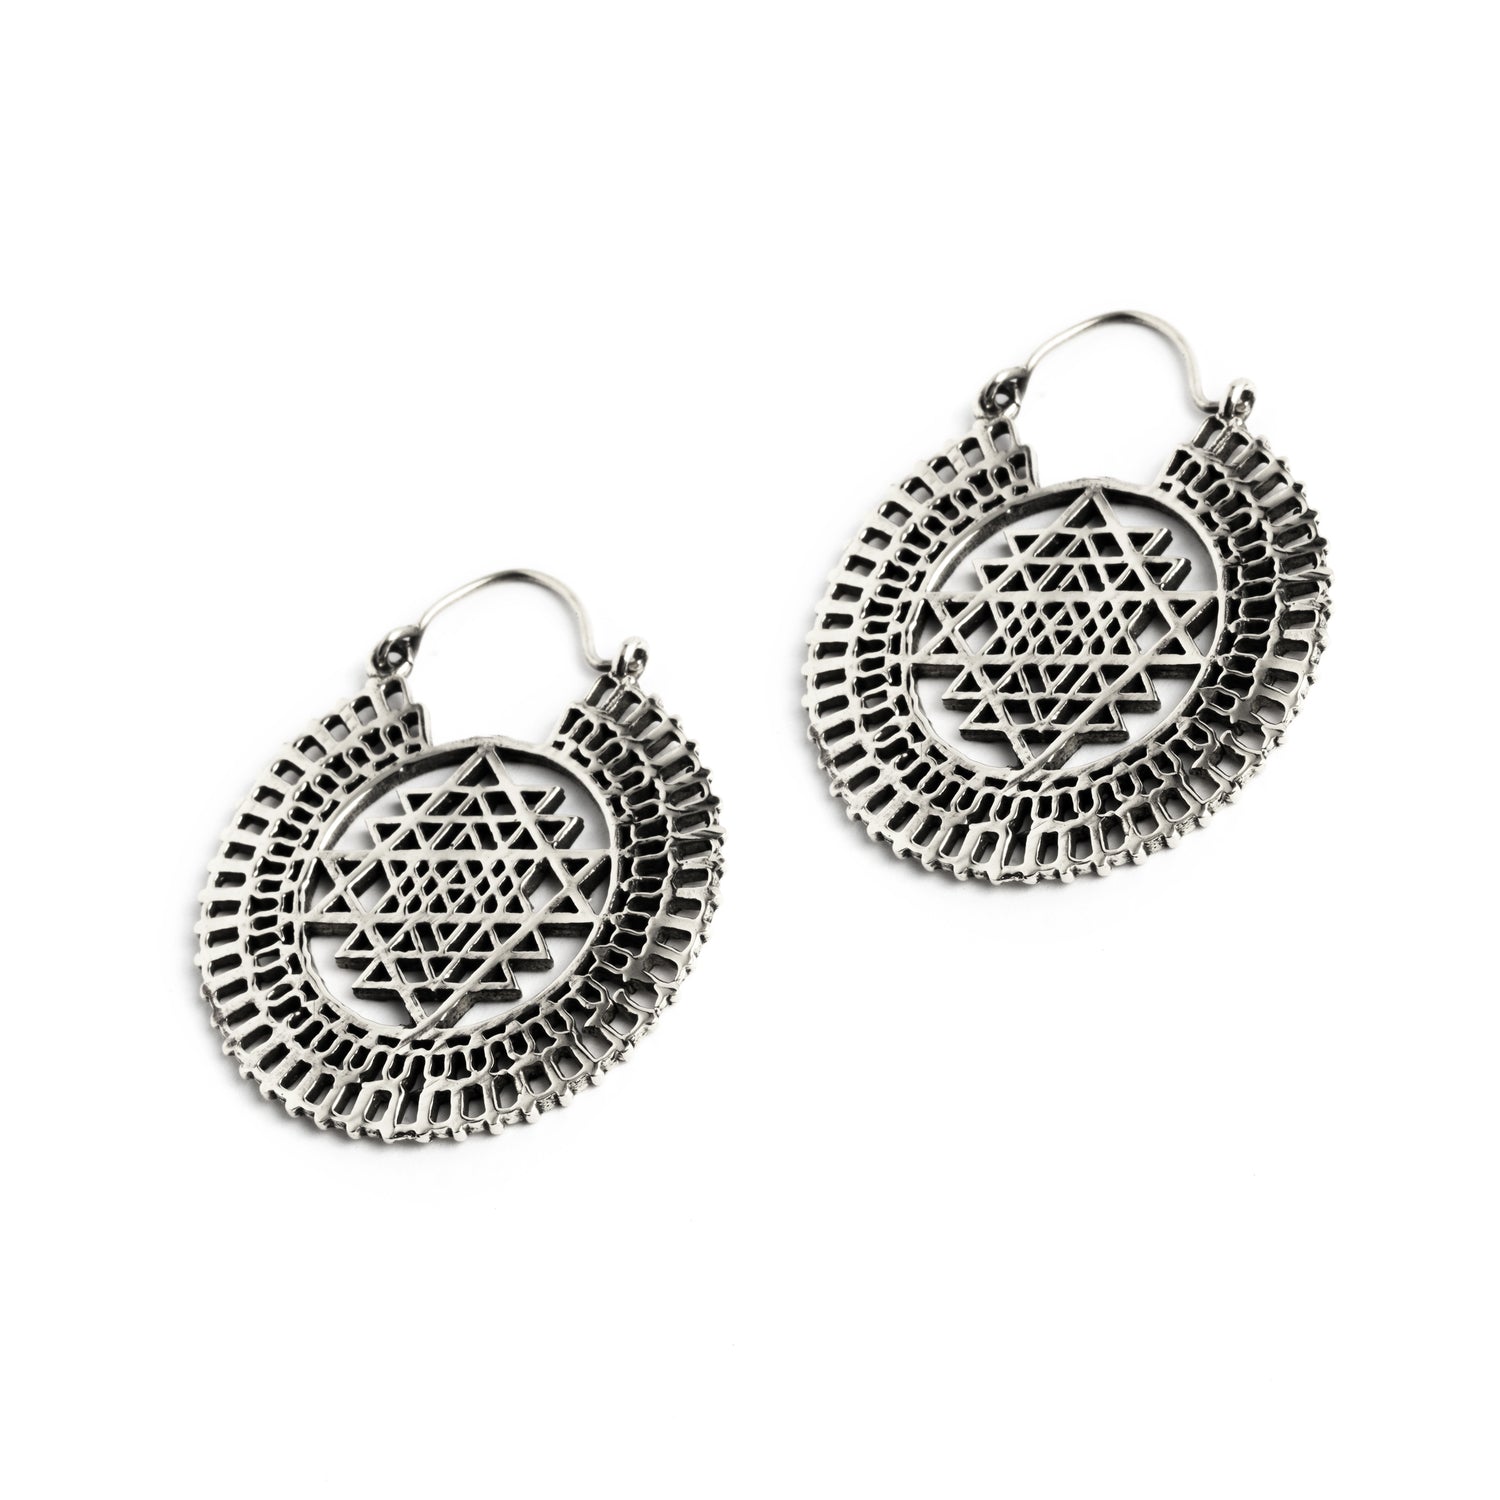 Sri Yantra Silver Hoops earrings right side view